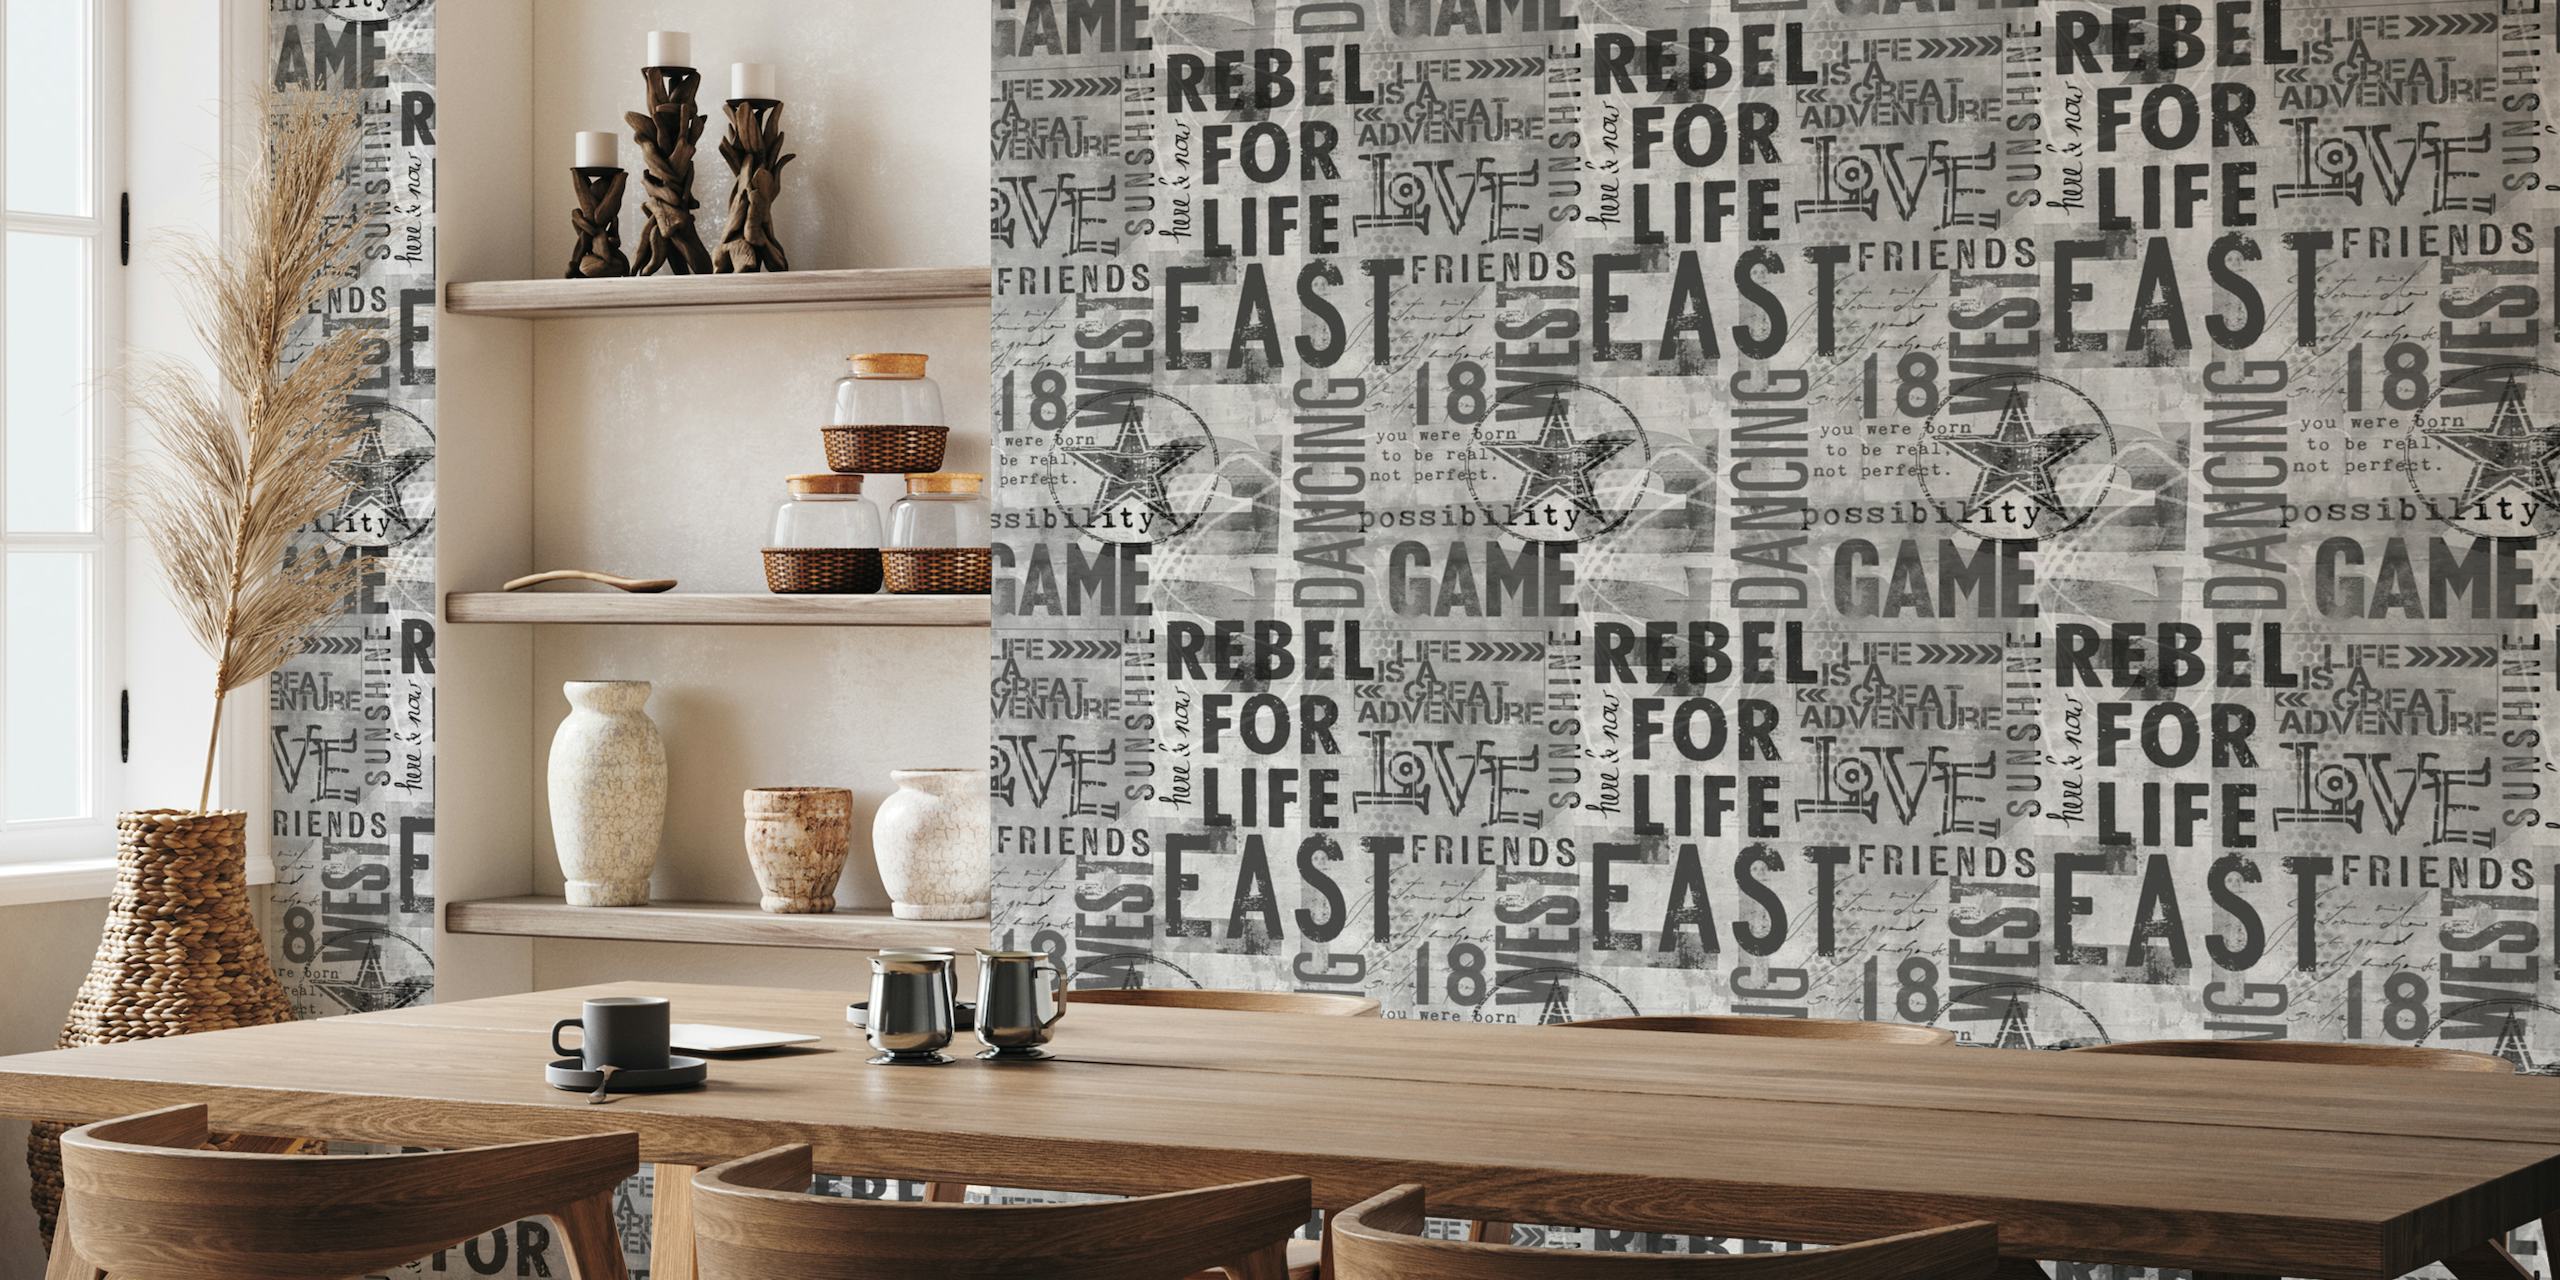 Murale d'art typographique grunge monochrome sur le thème urbain avec des mots comme « REBEL », « GAME », « ADVENTURE » et « FRIENDS ».